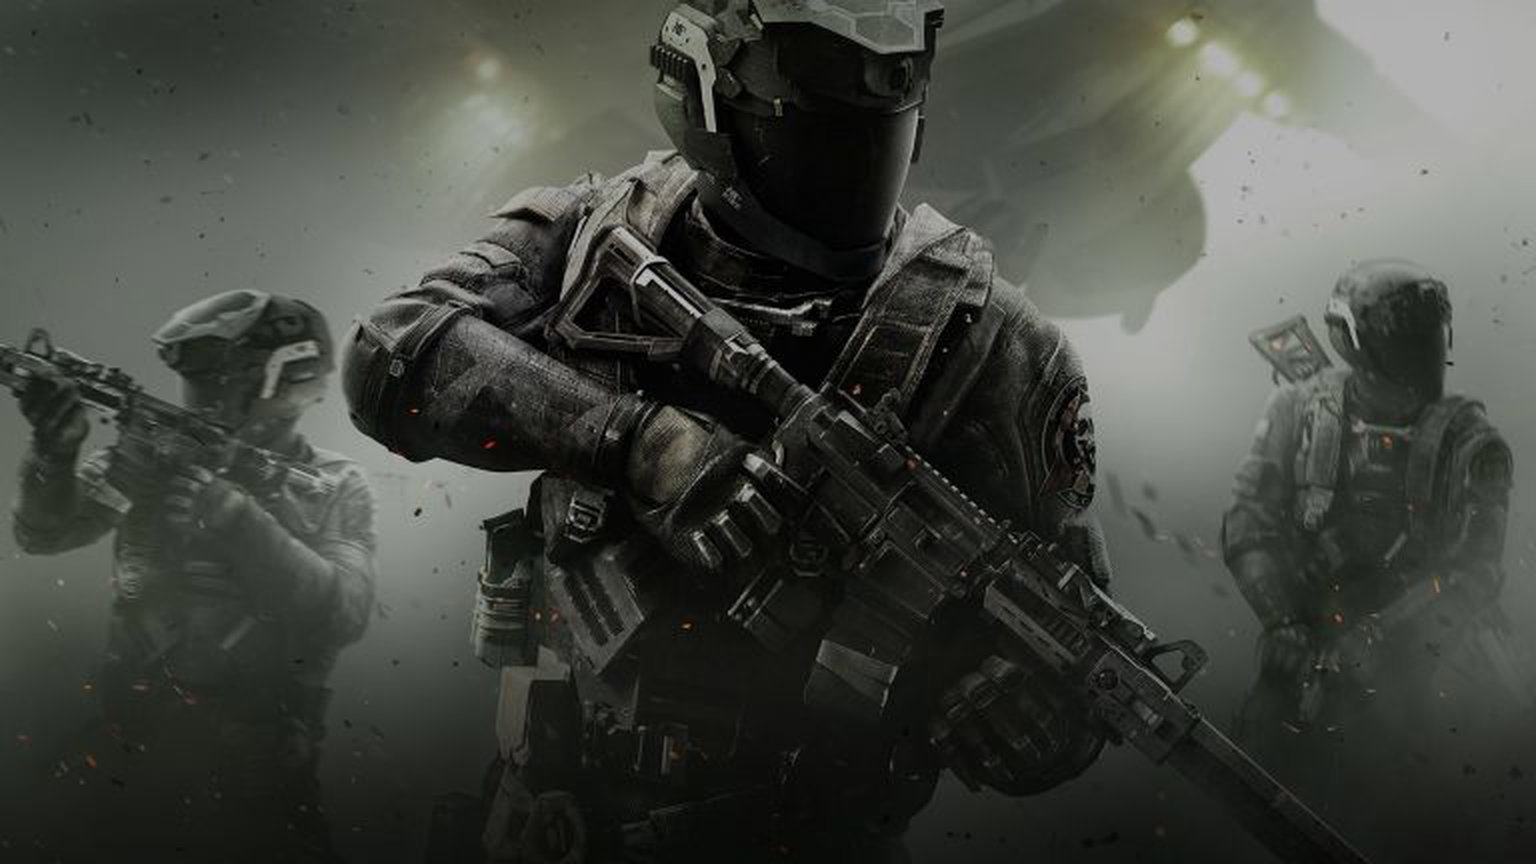 Call of Duty: Infinite Warfare Doubles Down on Classes, Futuristic Setting